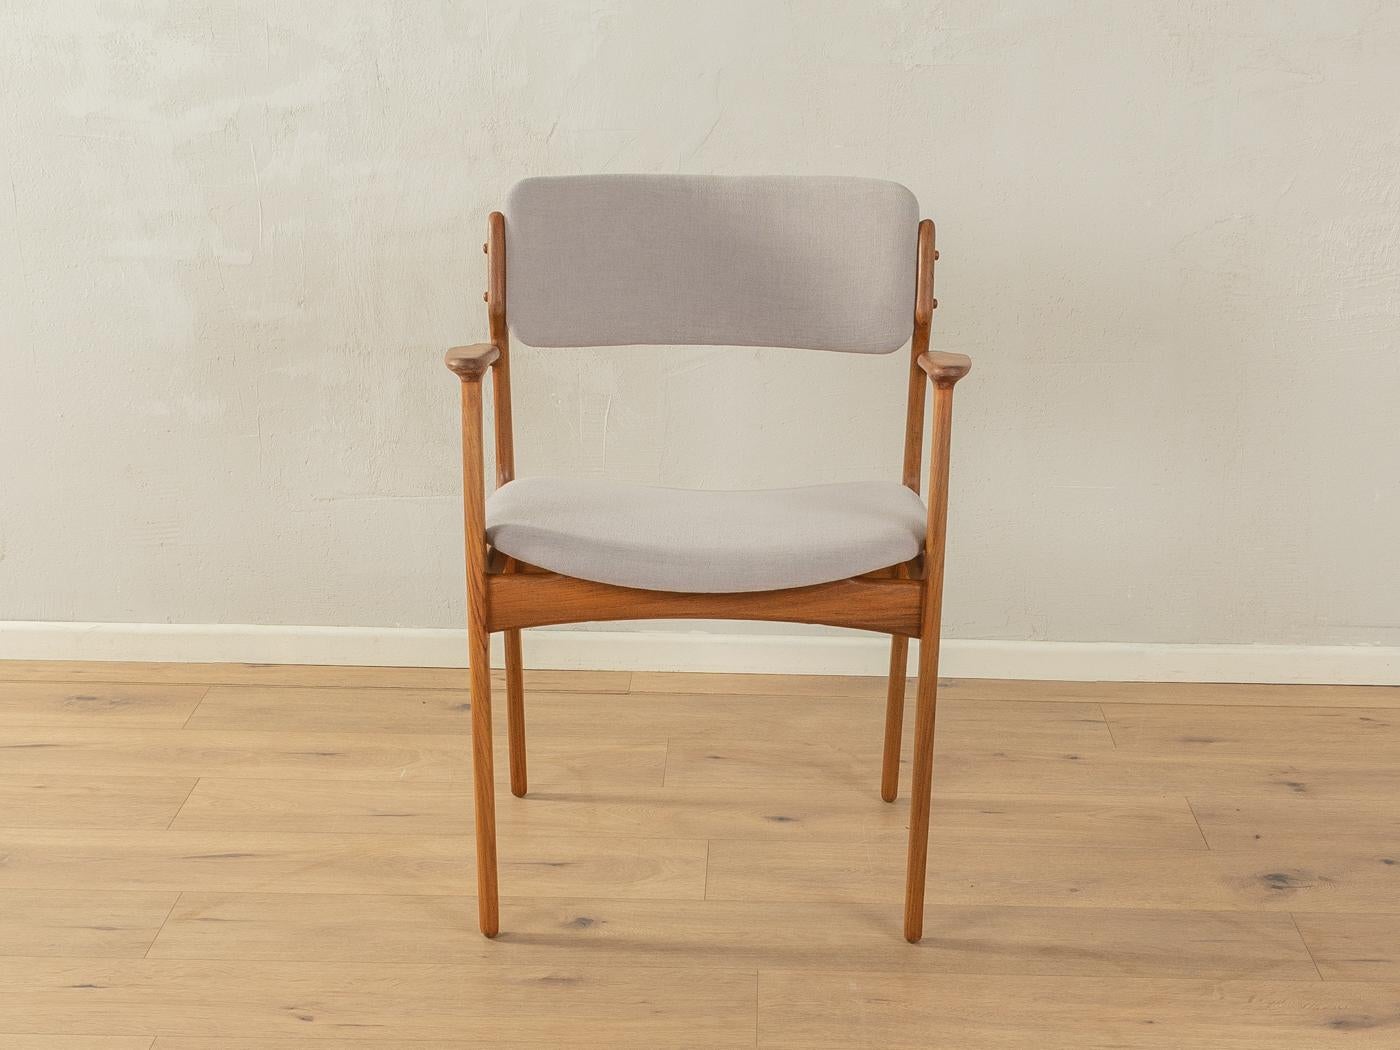 Fauteuil classique d'Erik Buch avec une structure en teck. Projet de 1954. La chaise a été retapissée et recouverte d'un tissu de haute qualité en gris clair.

Caractéristiques de qualité :
    Un design abouti : des proportions parfaites et un